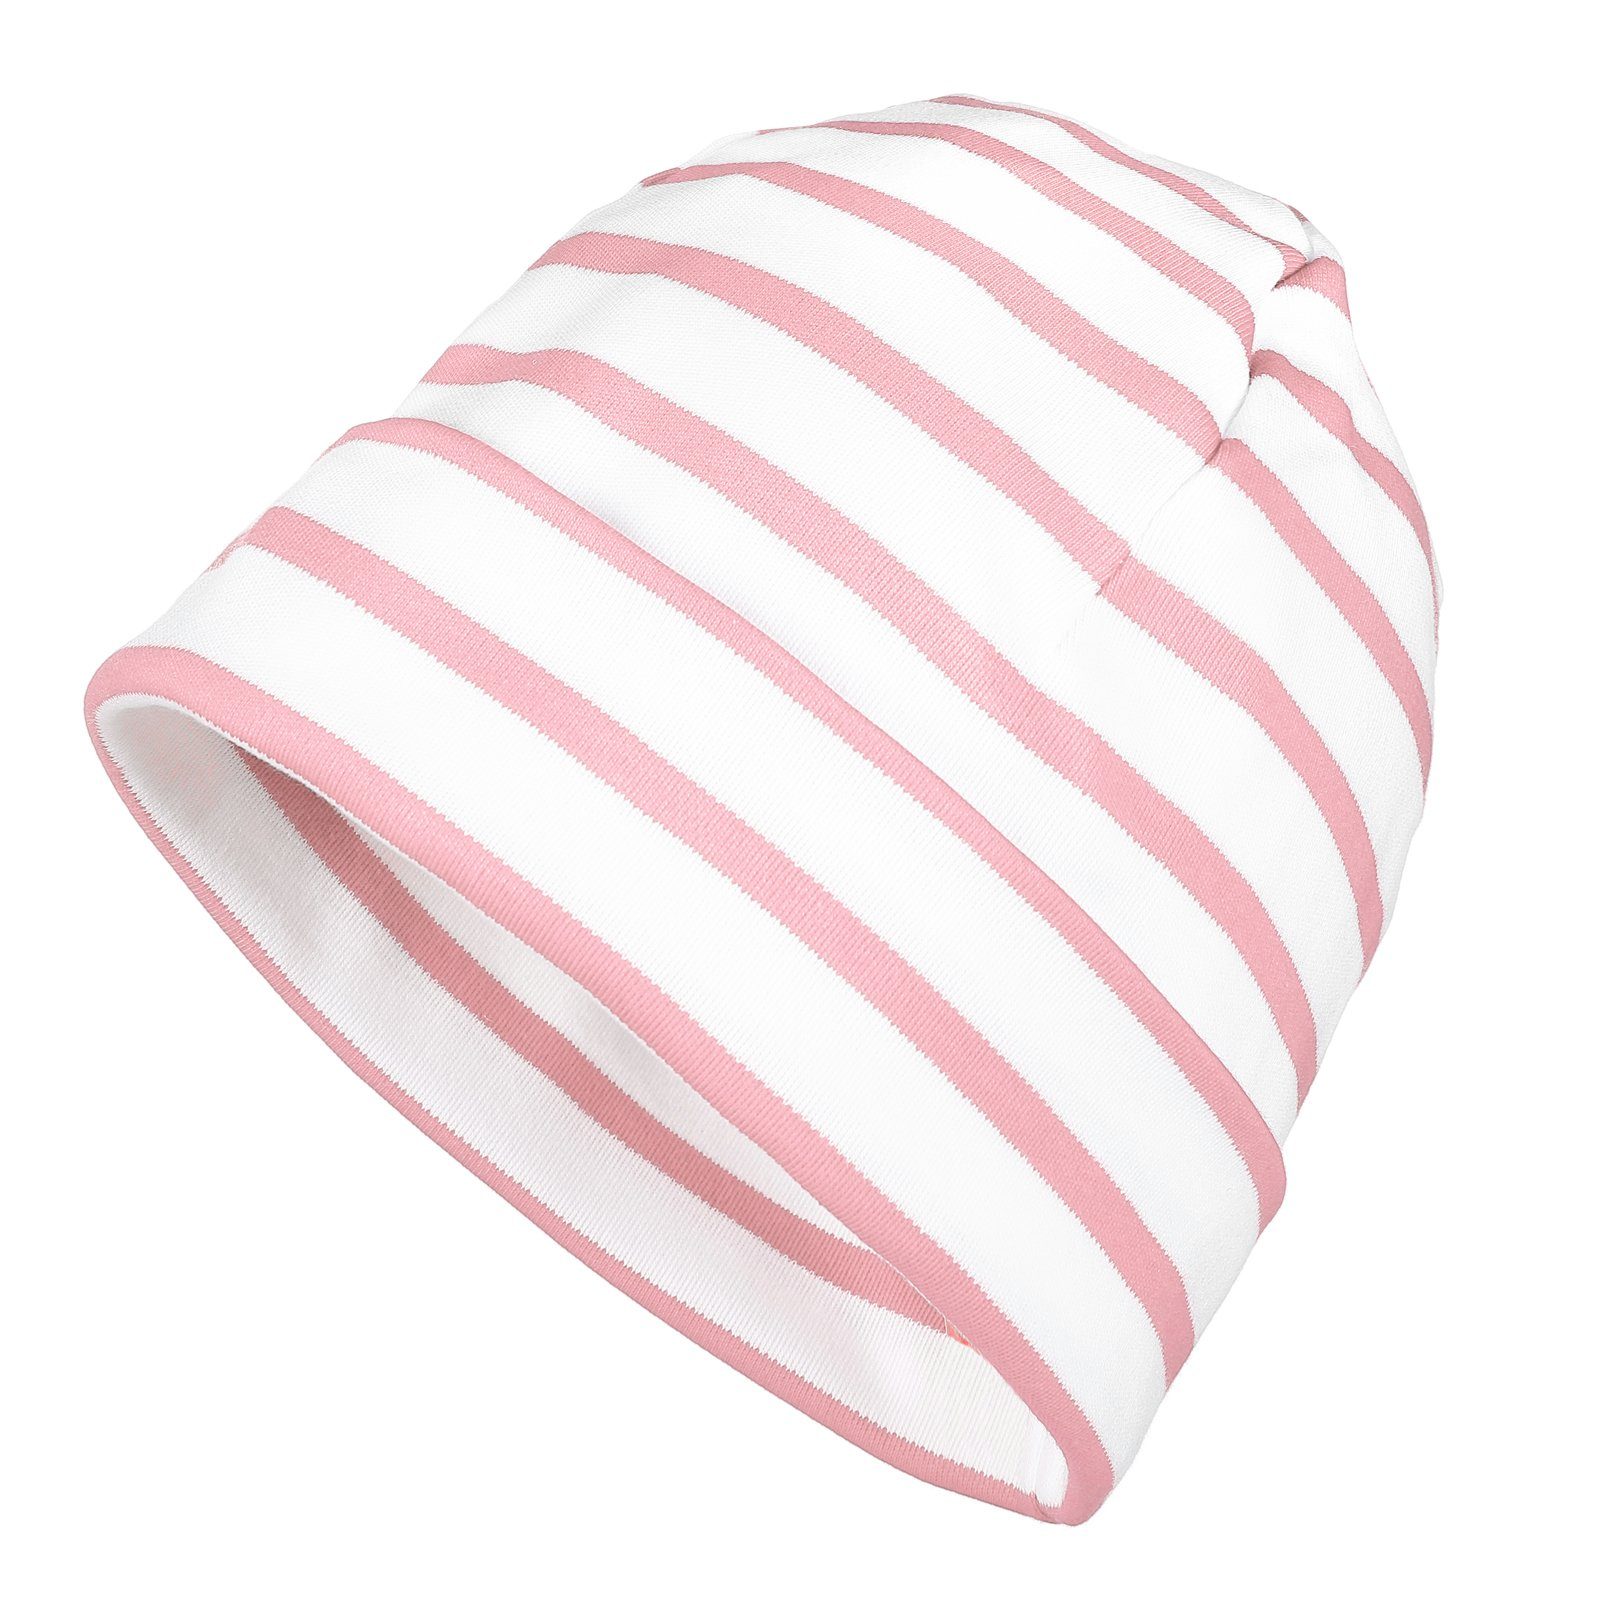 modAS Strickmütze Unisex Mütze Streifen für Kinder & Erwachsene - Ringelmütze Baumwolle (41) weiß / rosa